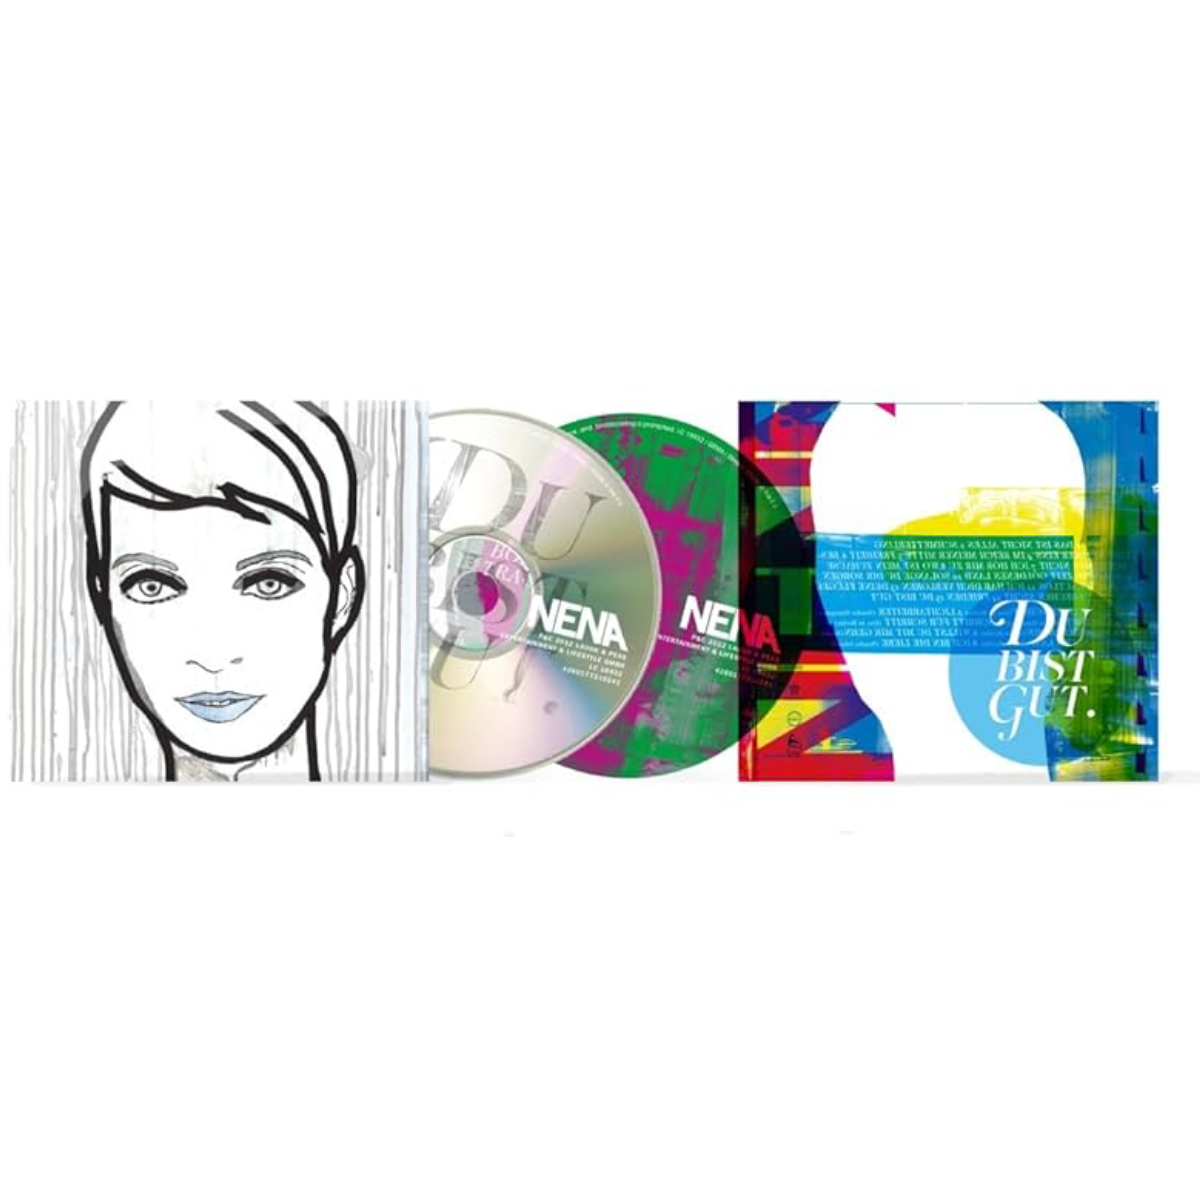 NENA - DU BIST GUT (Deluxe Edition) (2 CDs)